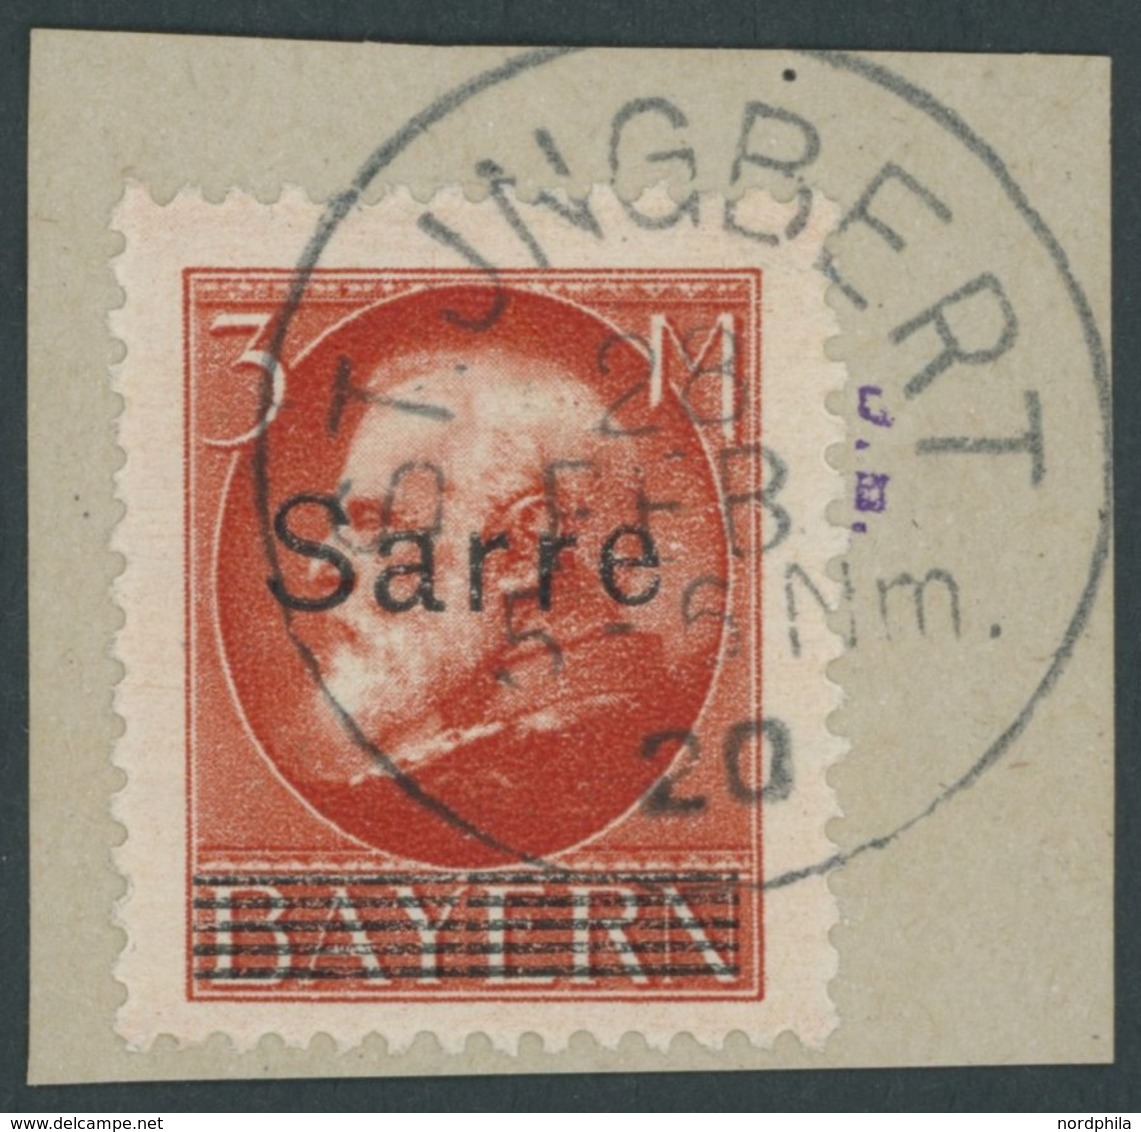 SAARGEBIET 29 BrfStk, 1920, 3 M. Bayern-Sarre, Stempel ST. INGBERT, Prachtbriefstück, Kurzbefund Braun, Mi. (200.-) - Otros & Sin Clasificación